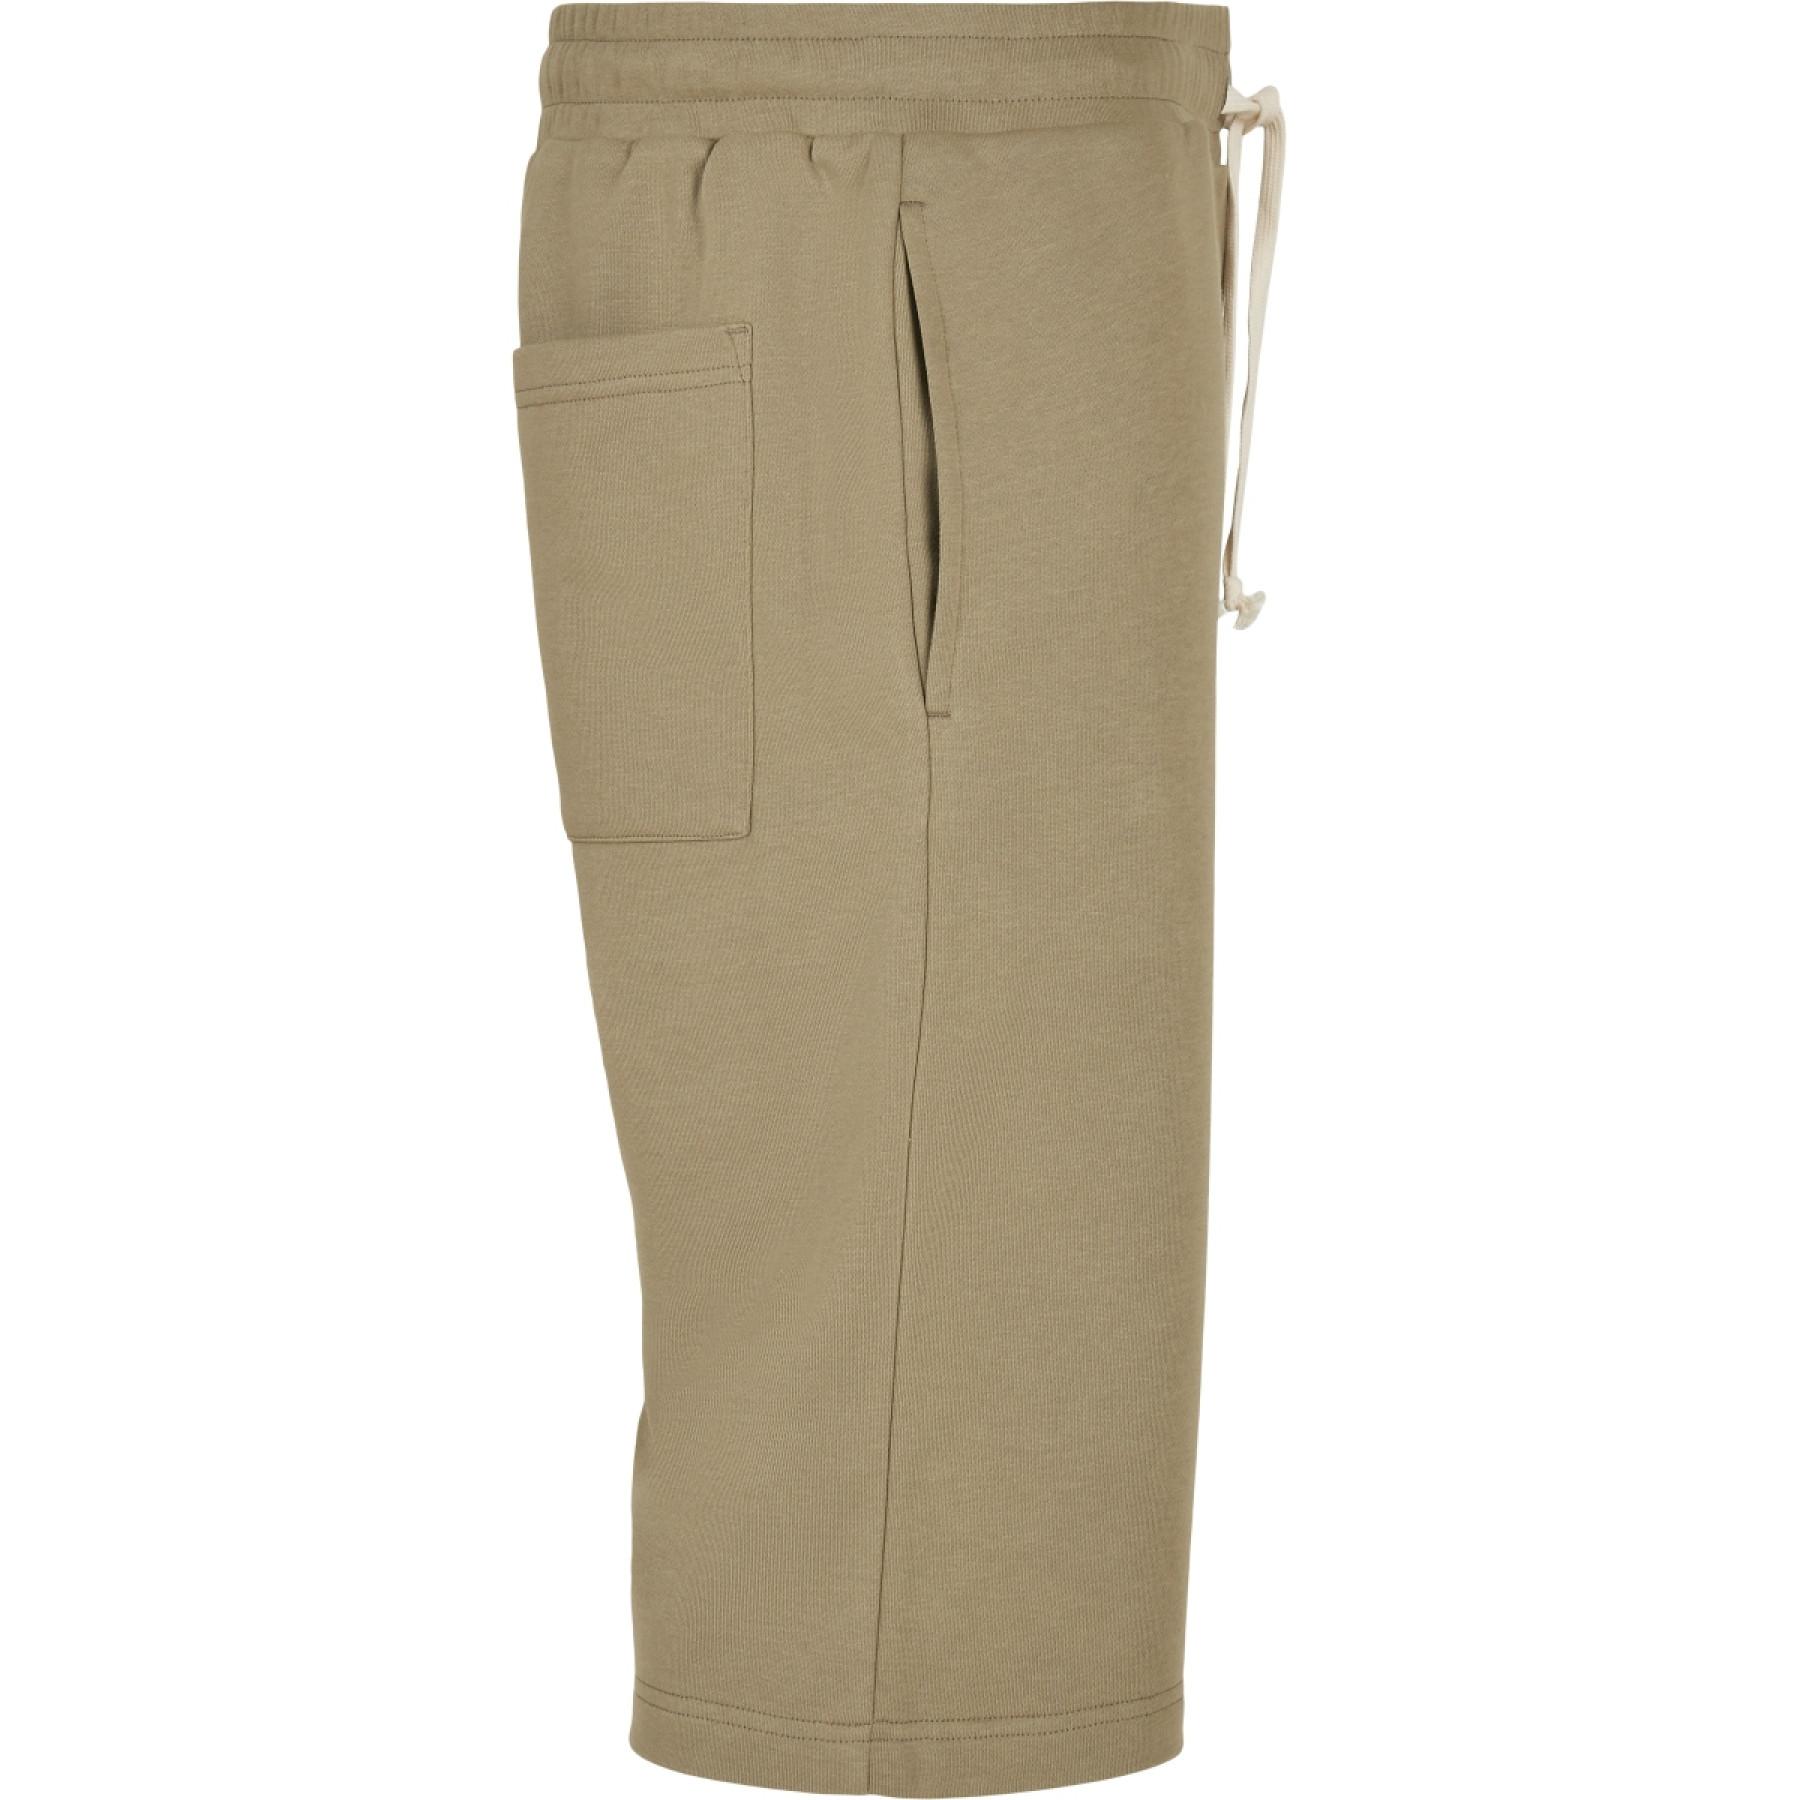 Pantaloncini Urban Classics low crotch-Taglie grandi